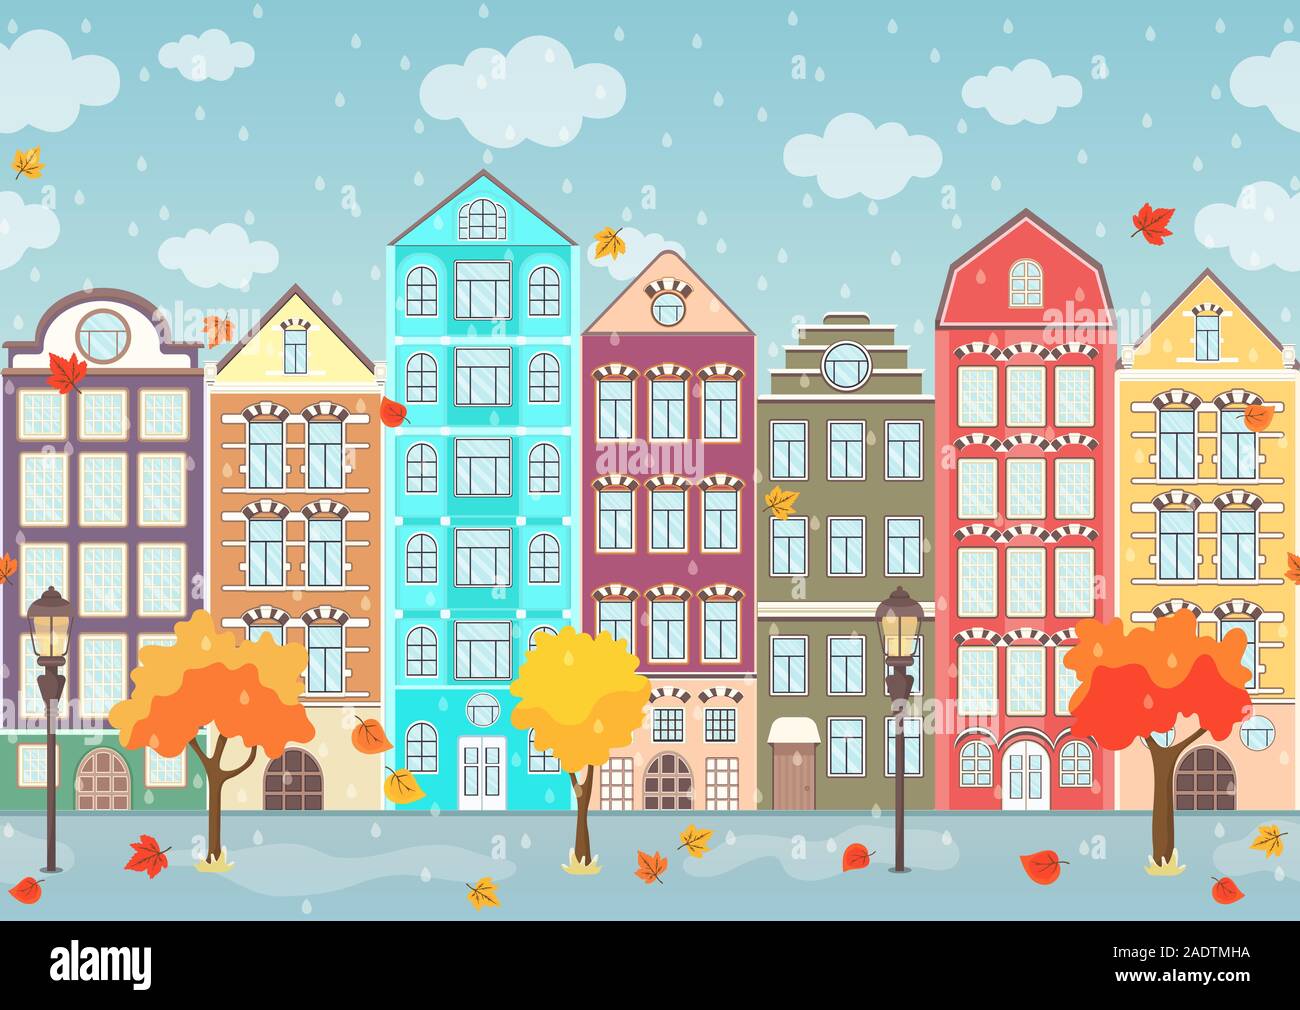 Nahtlose Grenze von Herbst bunte Häuser, Bäume und tropfenden Regen, äußere städtische Landschaft, Stadt, Hintergrund. Europäische Fassaden in der Zeile, die Blätter gefallen Stock Vektor